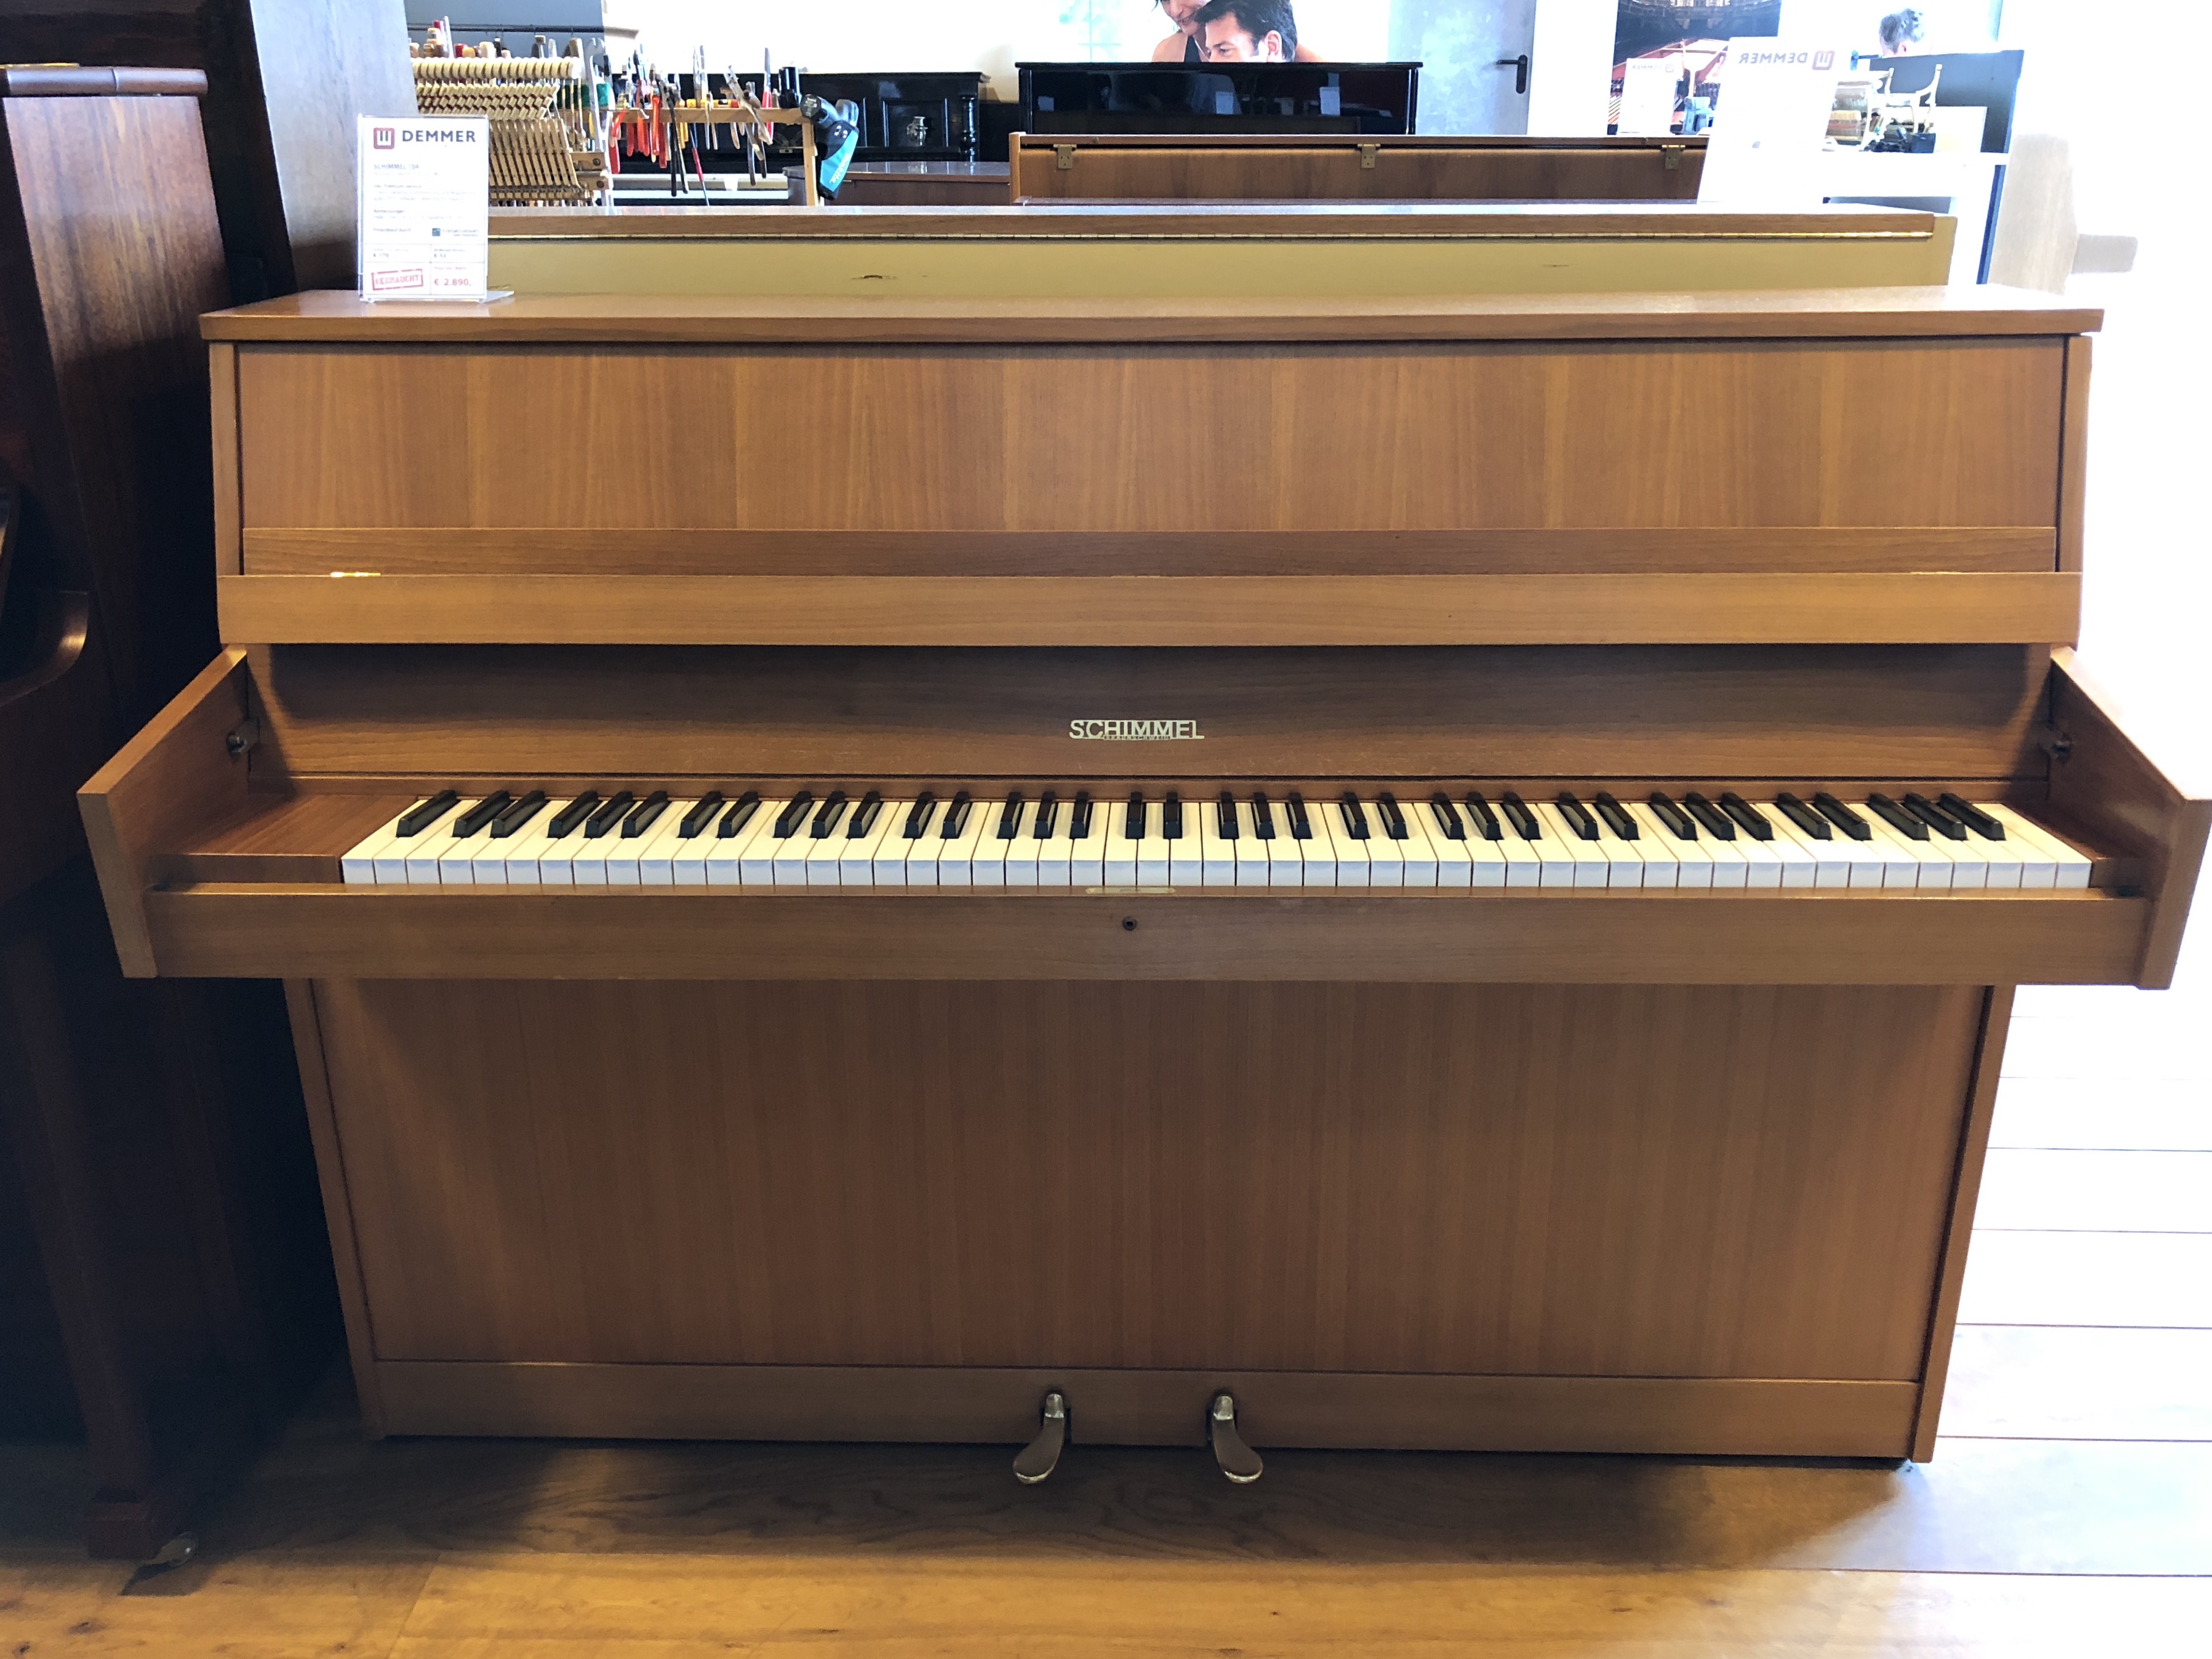 Schimmel 104 Klavier Bj 1967 Verkauft Gebrauchtklaviere Hersteller Klaviere Demmer Onlineshop Fur Klavier Flugel Und Yamaha Clavinova D Piano